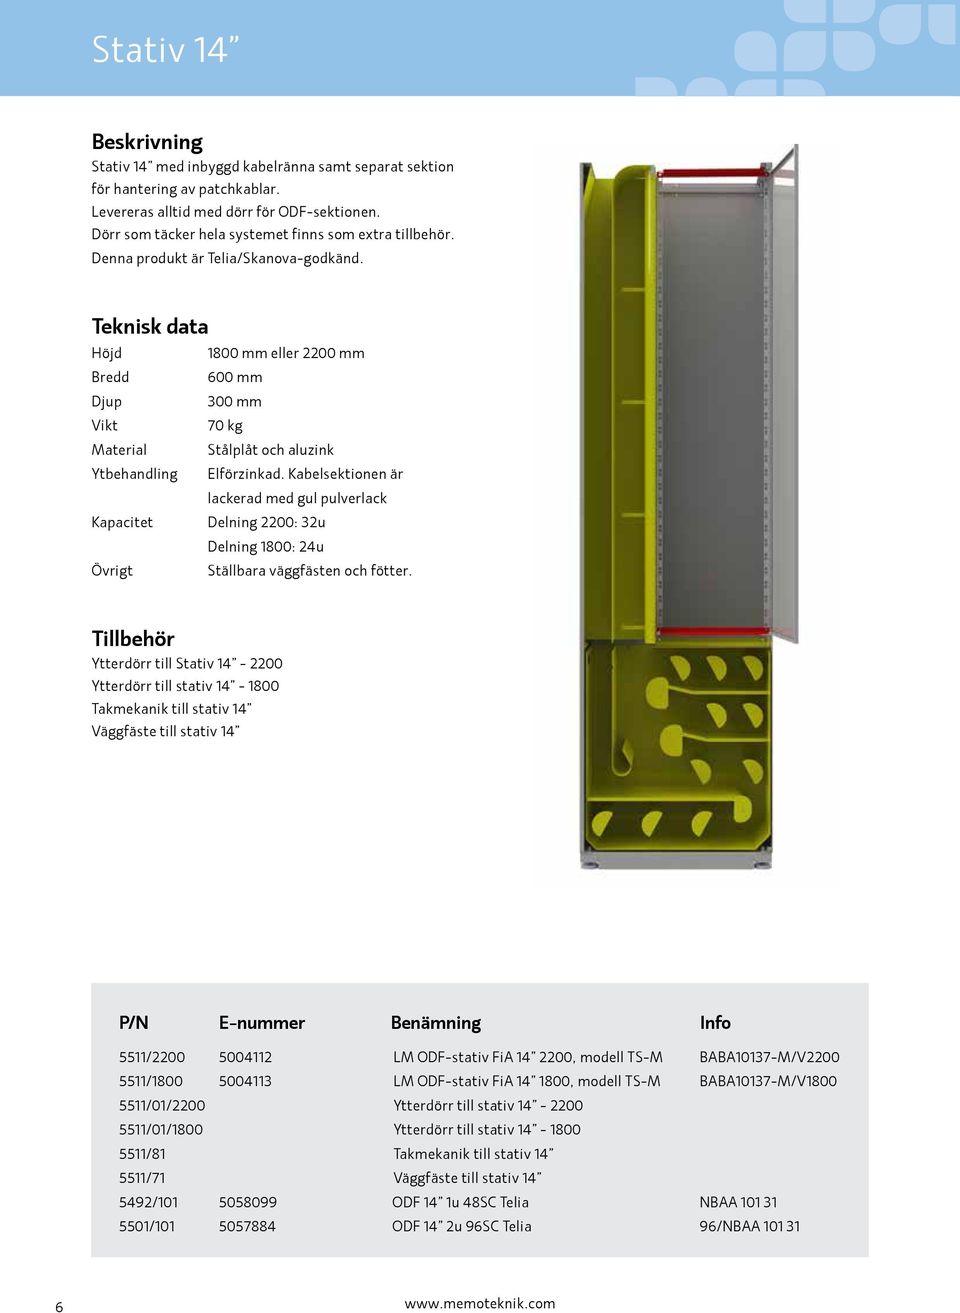 Kabelsektionen är lackerad med gul pulverlack Kapacitet Delning 2200: 32u Delning 1800: 24u Ställbara väggfästen och fötter.